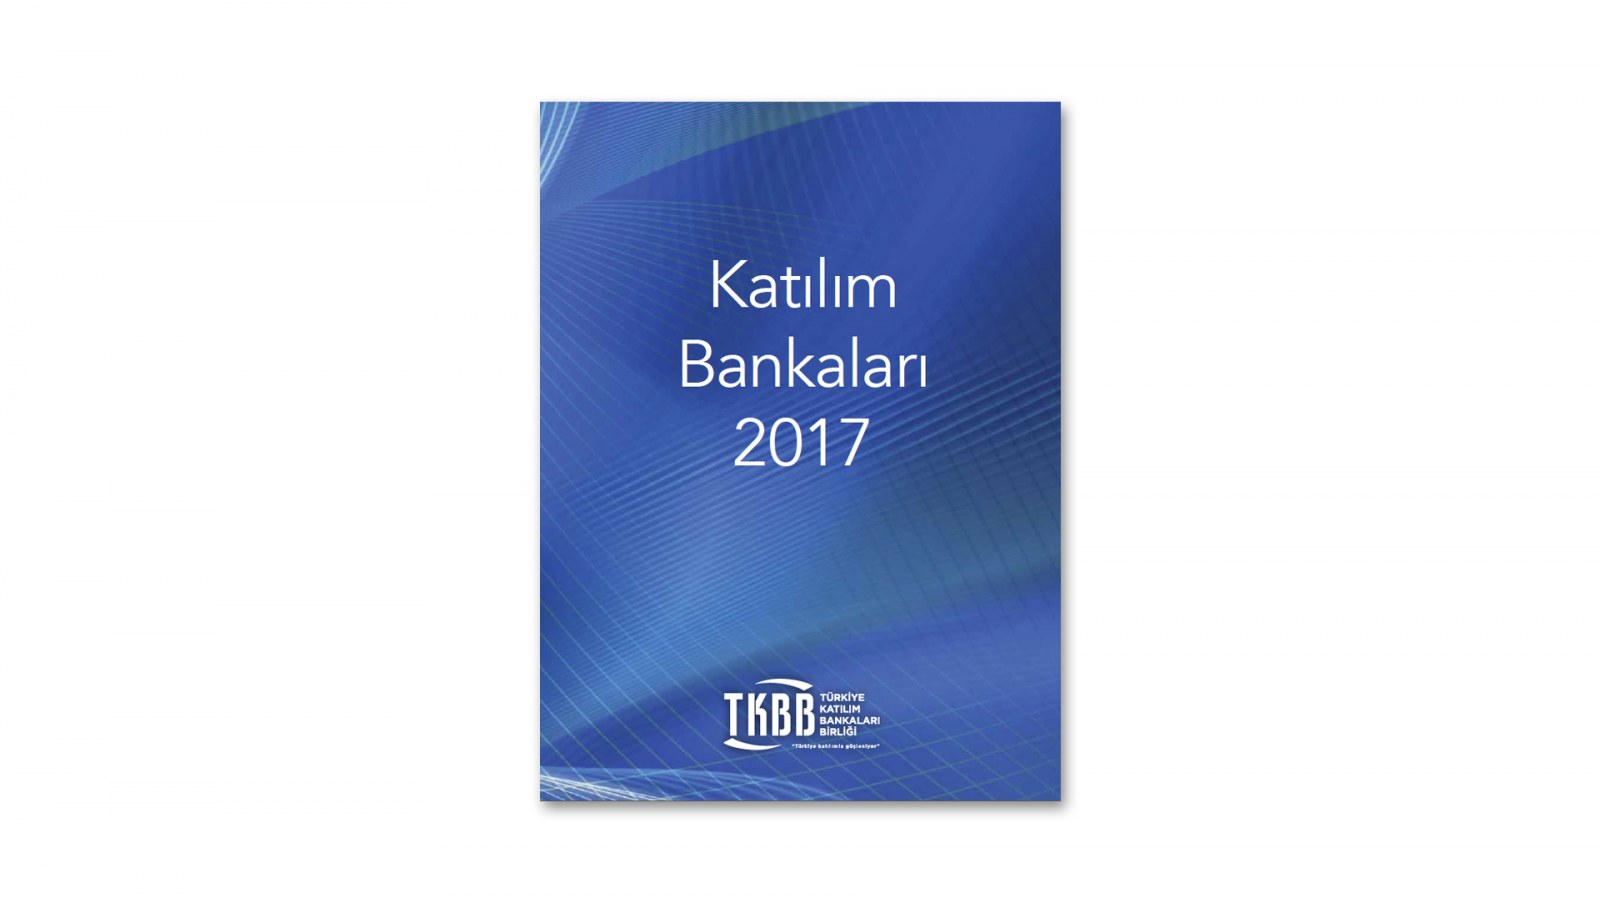 TÜRKİYE KATILIM BANKALARI BİRLİĞİ / 2017 Faaliyet Raporu / 2017 Annual Report